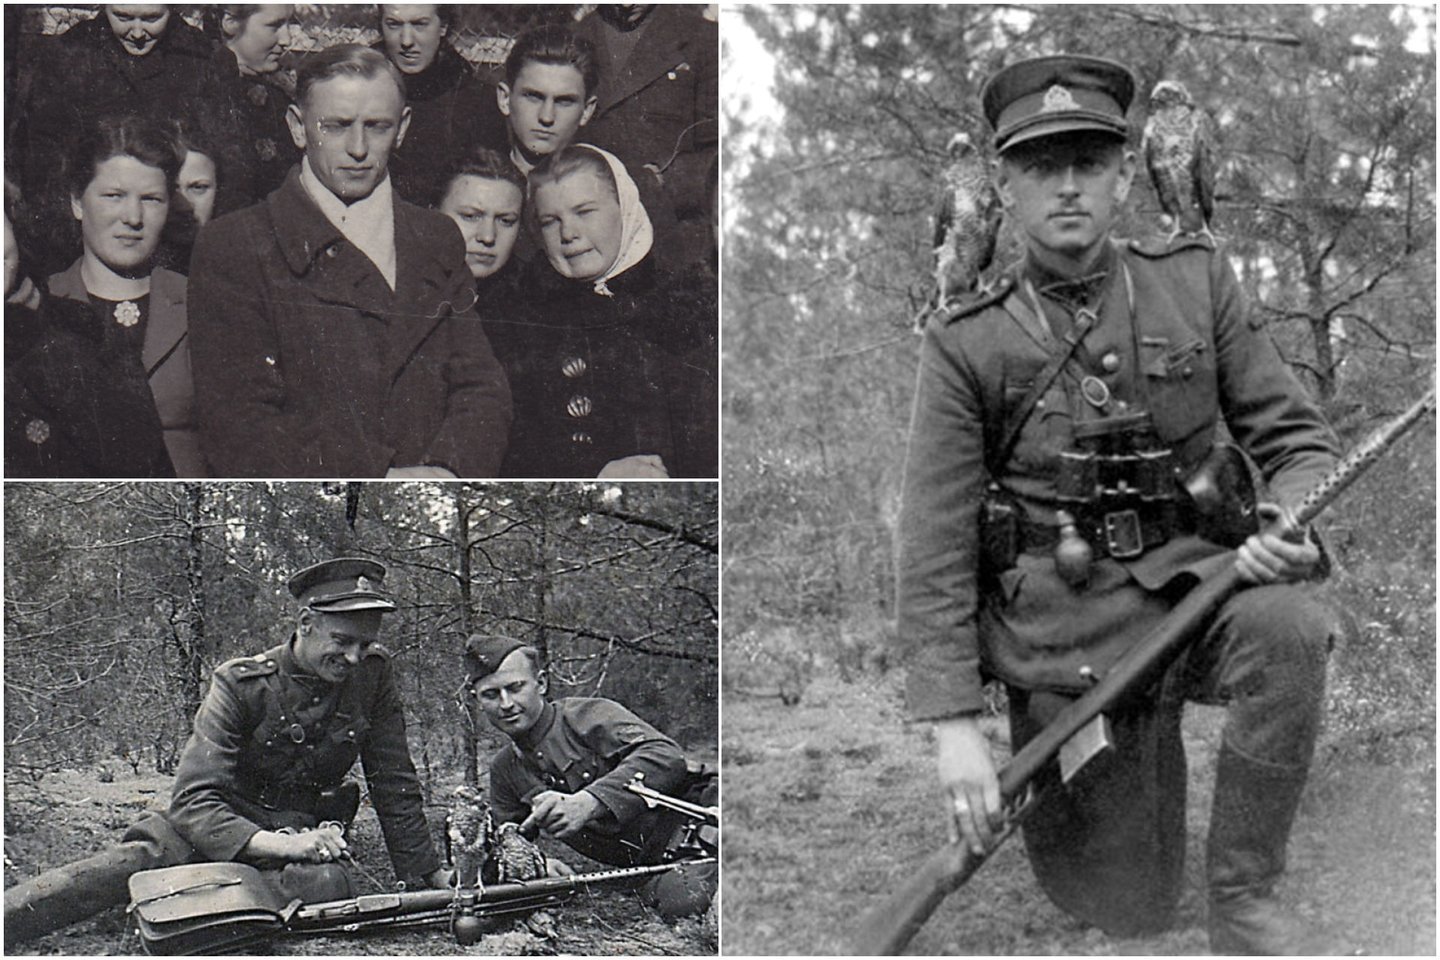  Legendinio partizanų vado A.Ramanausko-Vanago pasisakymai aktualūs ir šiomis dienomis. <br> Nuotr. iš asmeninio A.Ramanauskaitės-Skokauskienės archyvo. 